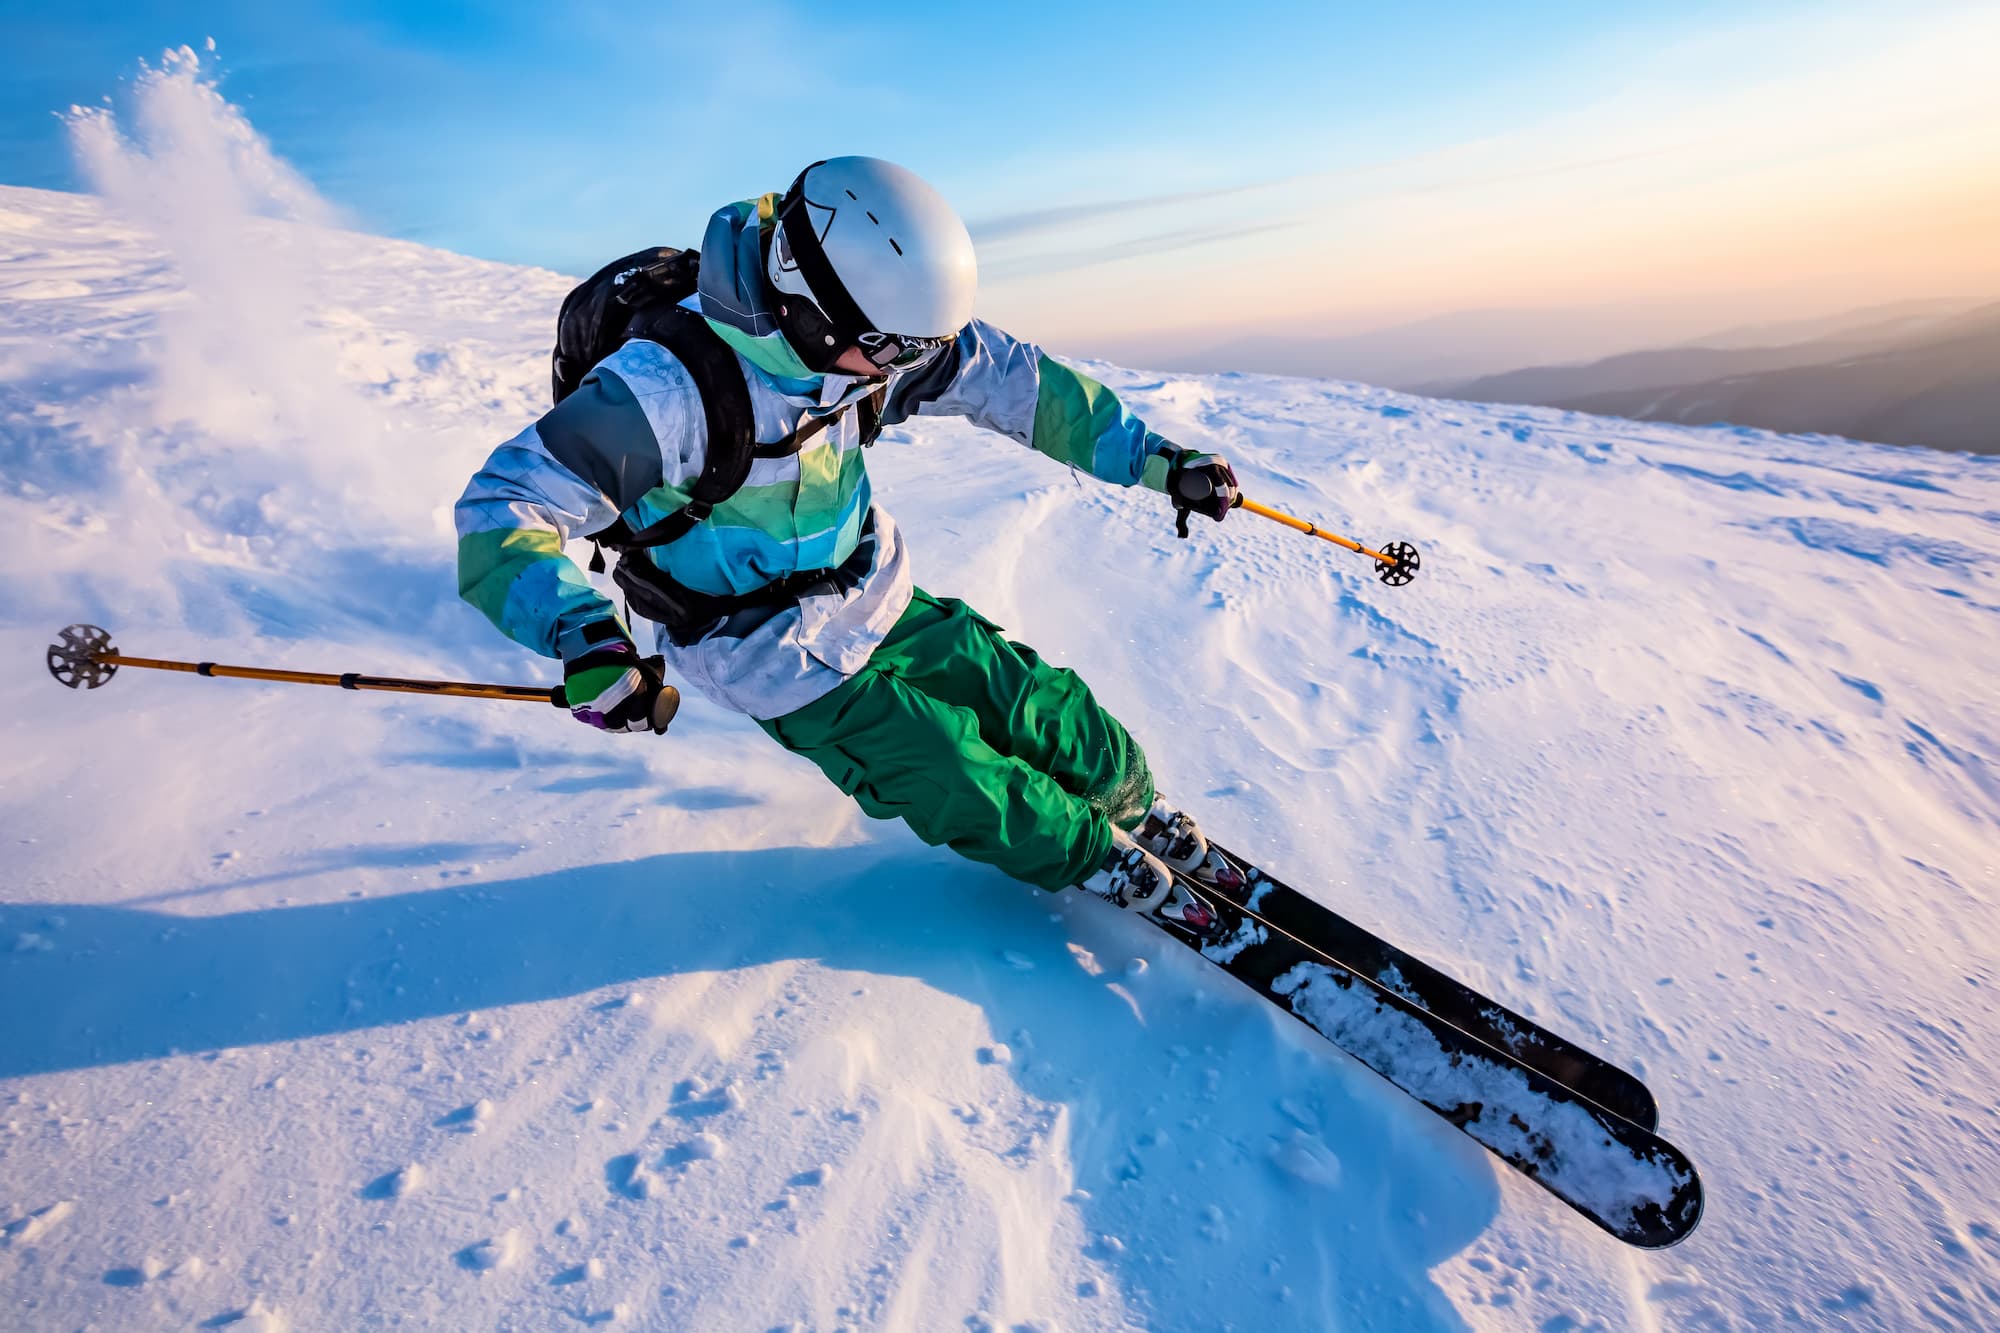 homme en train de faire du ski en montagne avec un équipement complet blanc et vert (casque, ski, bâtons, lunettes, veste, sac à dos, pantalon, bottes, gants)